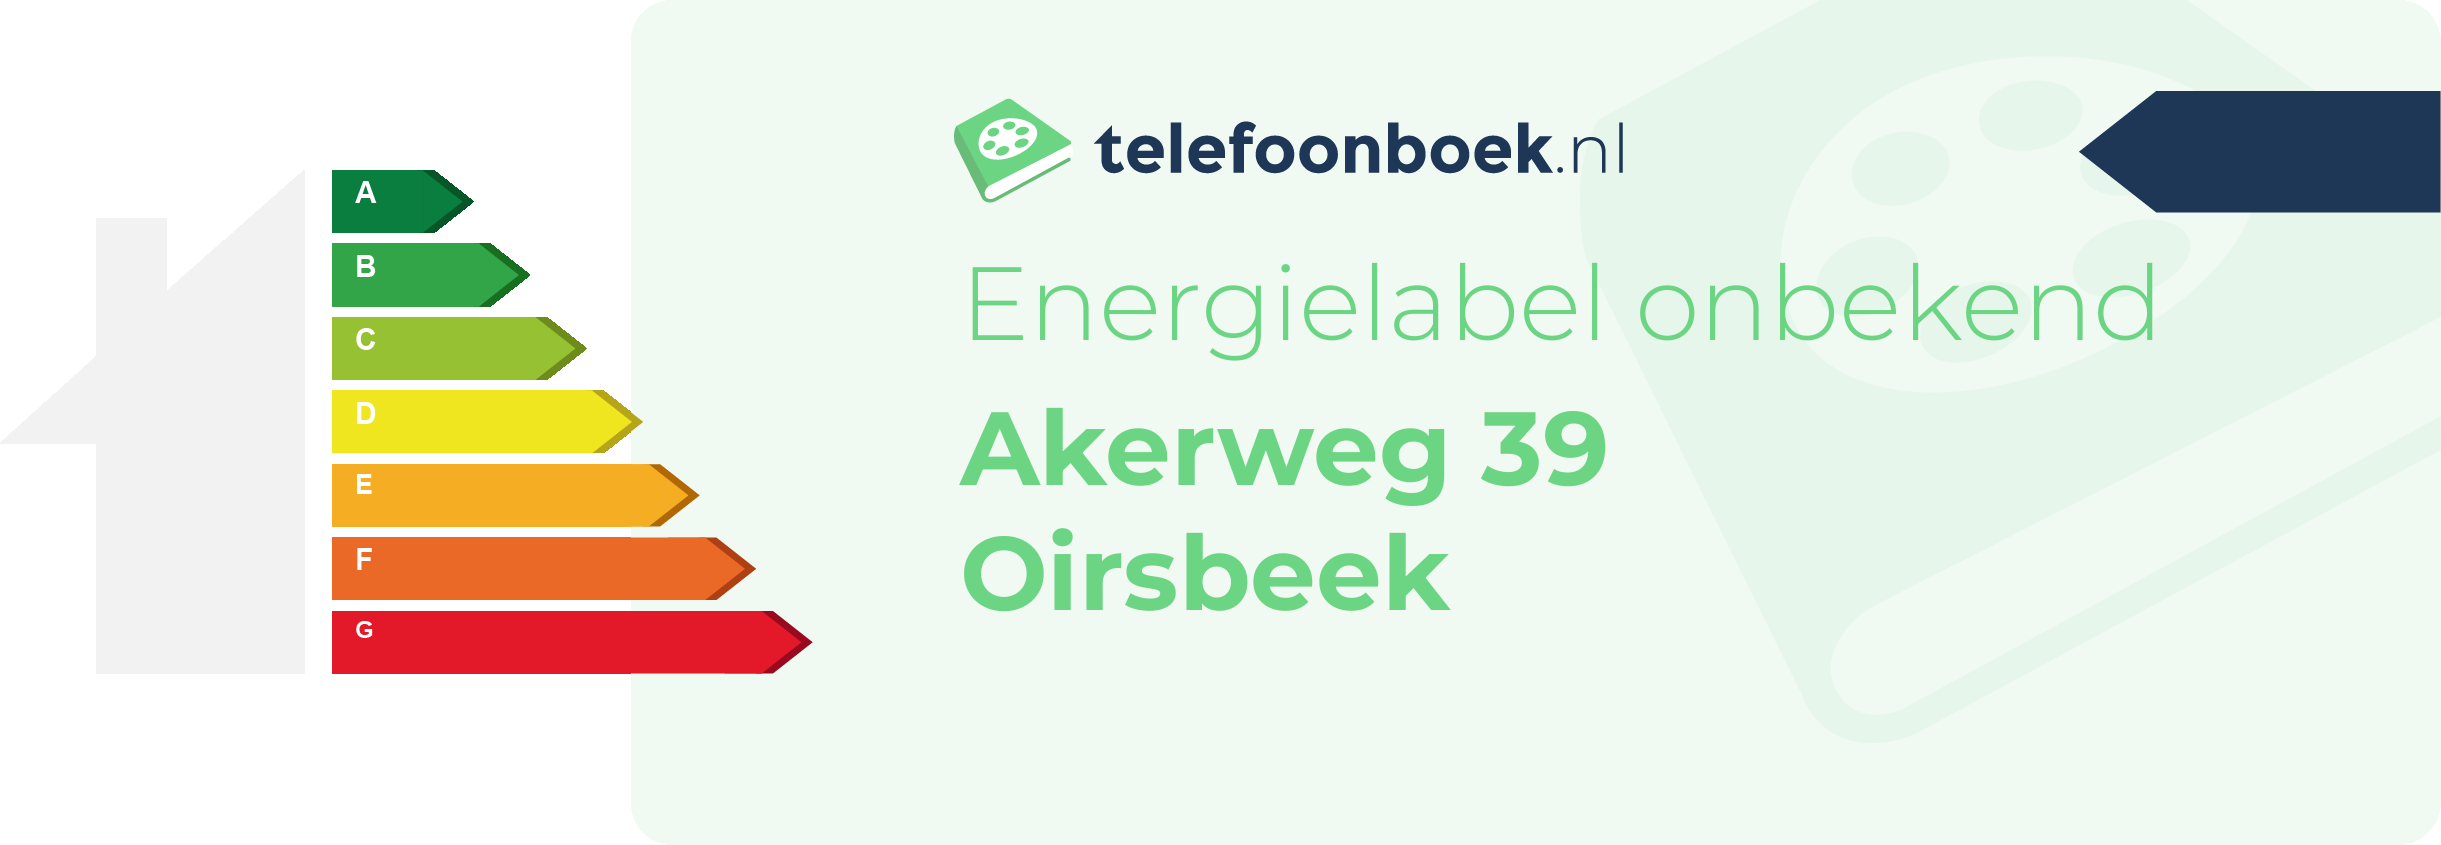 Energielabel Akerweg 39 Oirsbeek